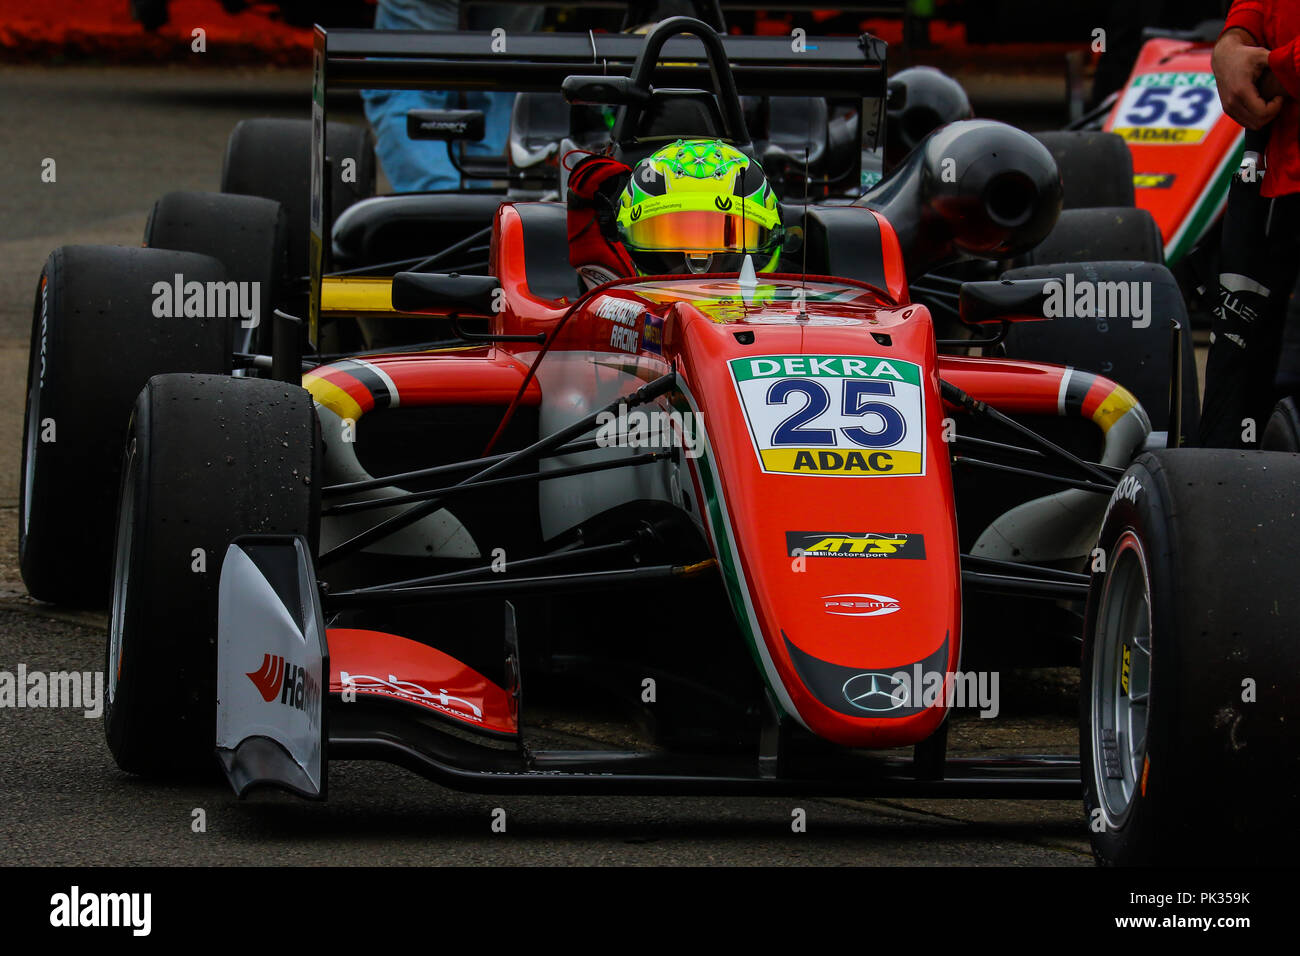 Mick Schumacher, figlio di sette volte la Formula 1 Campione Michael, nel campionato FIA di Formula 3 del campionato europeo, la guida per la Prema Powerteam. Foto Stock